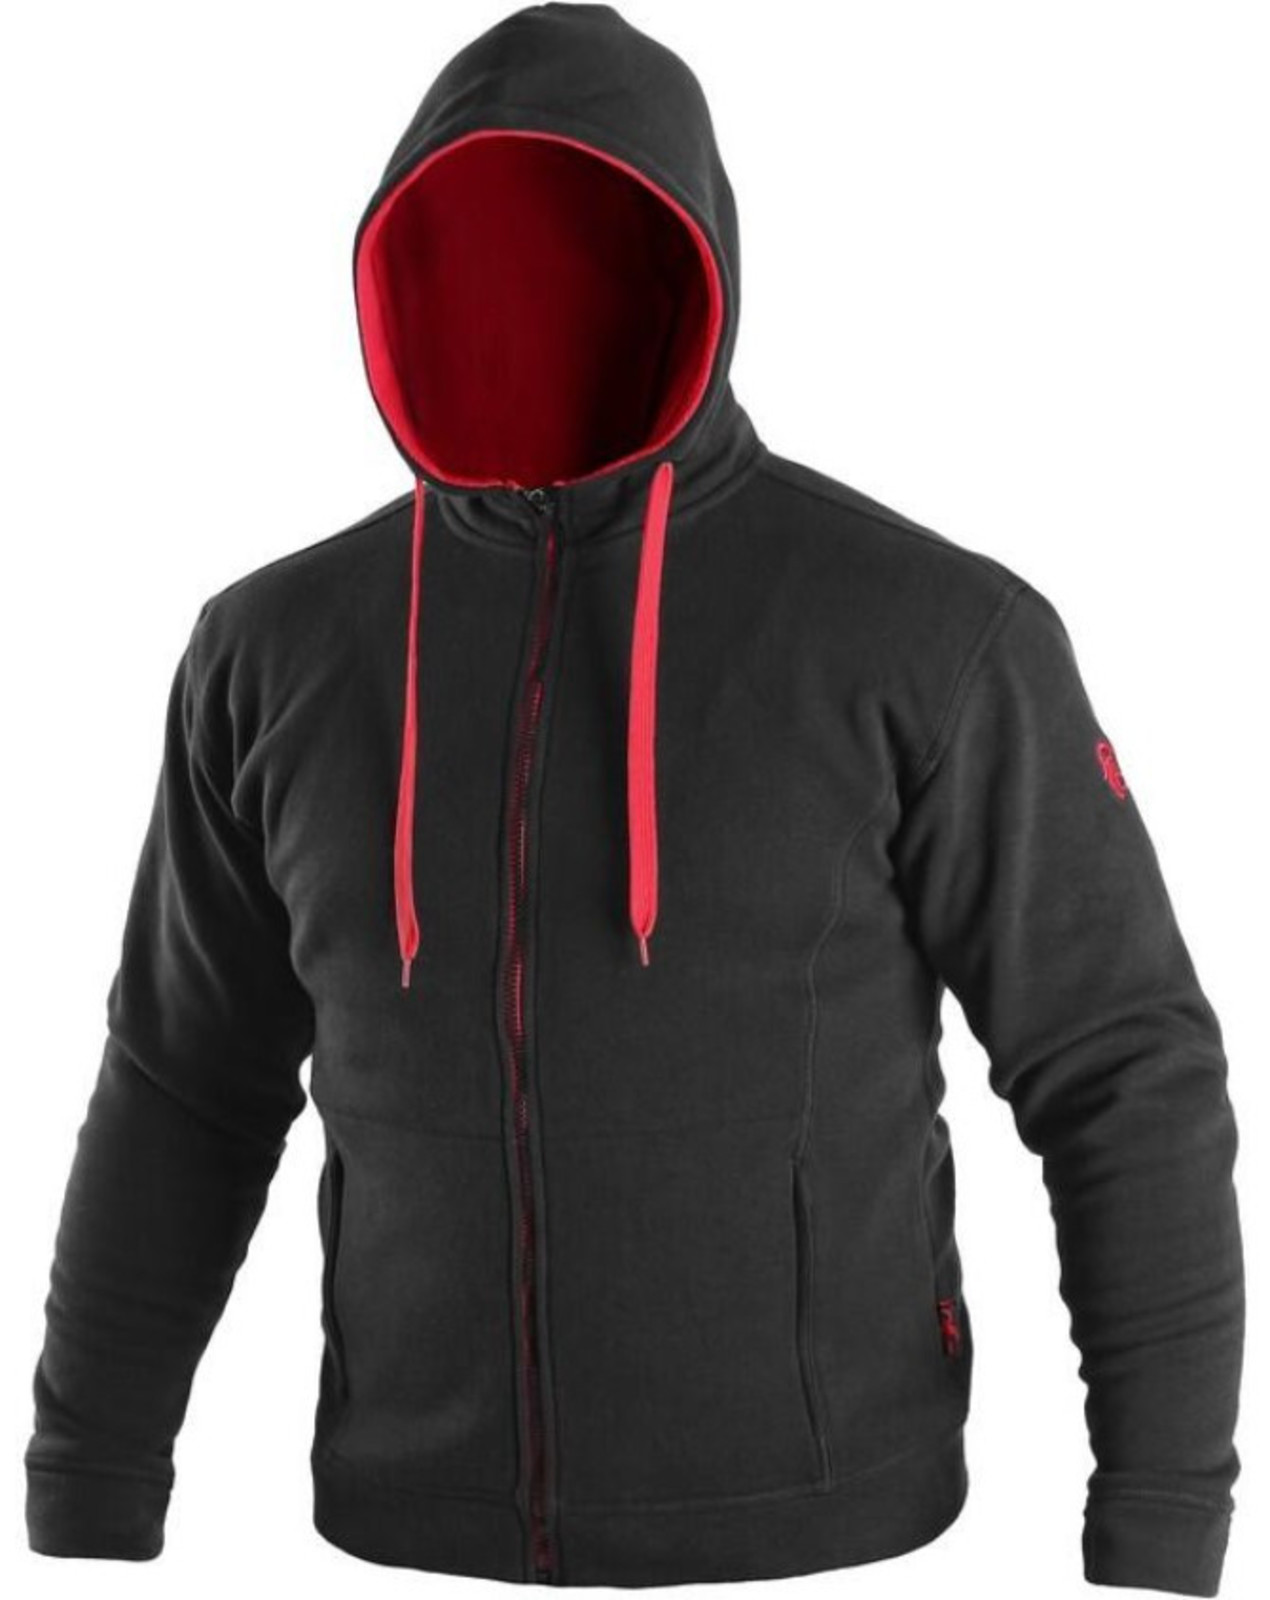 Mikina na zips s kapucňou CXS Harrison - veľkosť: M, farba: čierna/červená